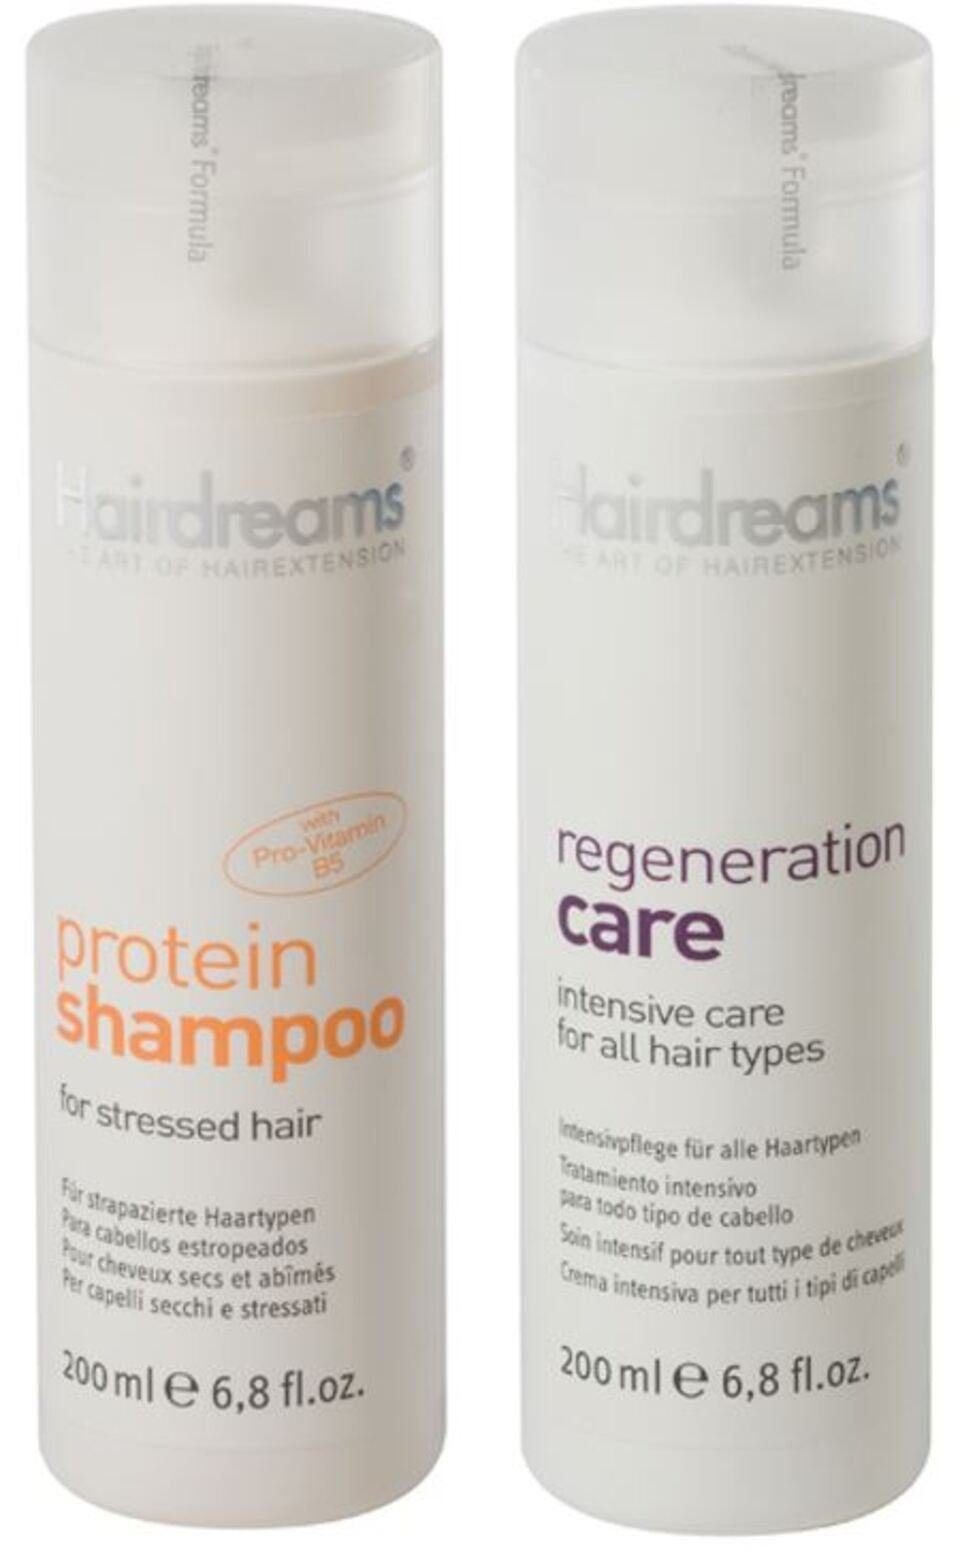 Protein Set, Care, Hairdreams + Shampoo Echthhaarverlängerungen für Regeneration Haarpflege-Set mit Haare 2-tlg.,